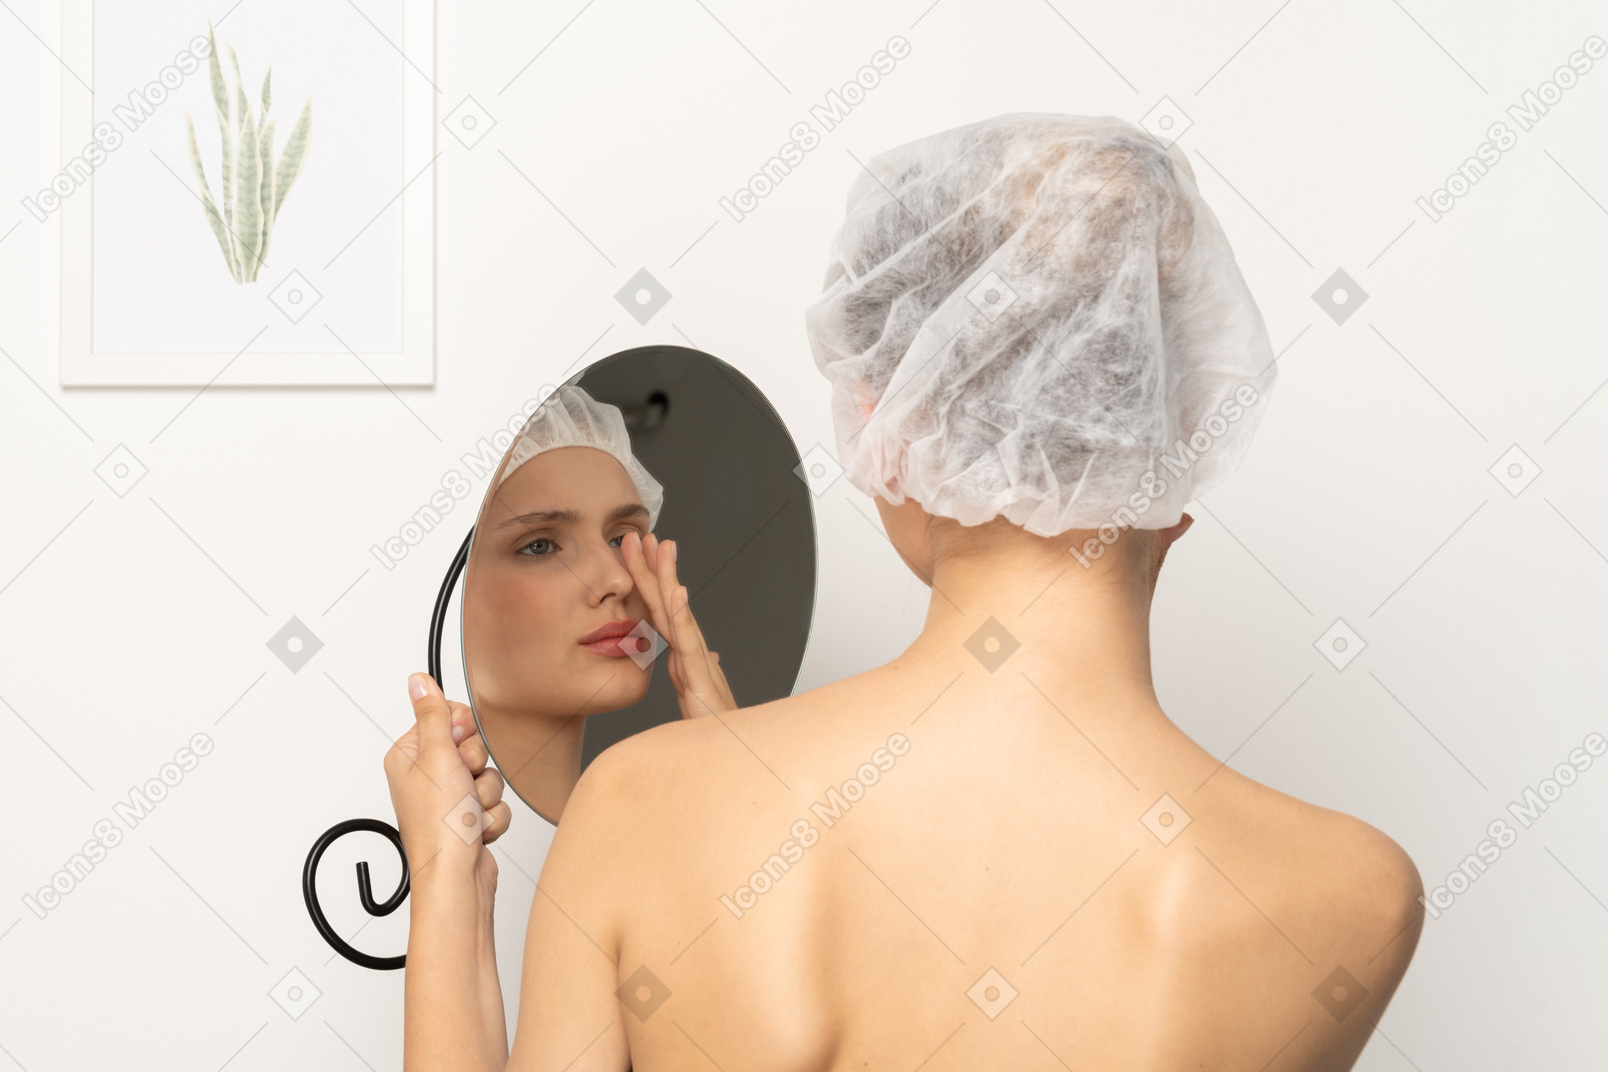 Неуверенная в себе женщина в медицинской шапочке смотрит на свое отражение в зеркале